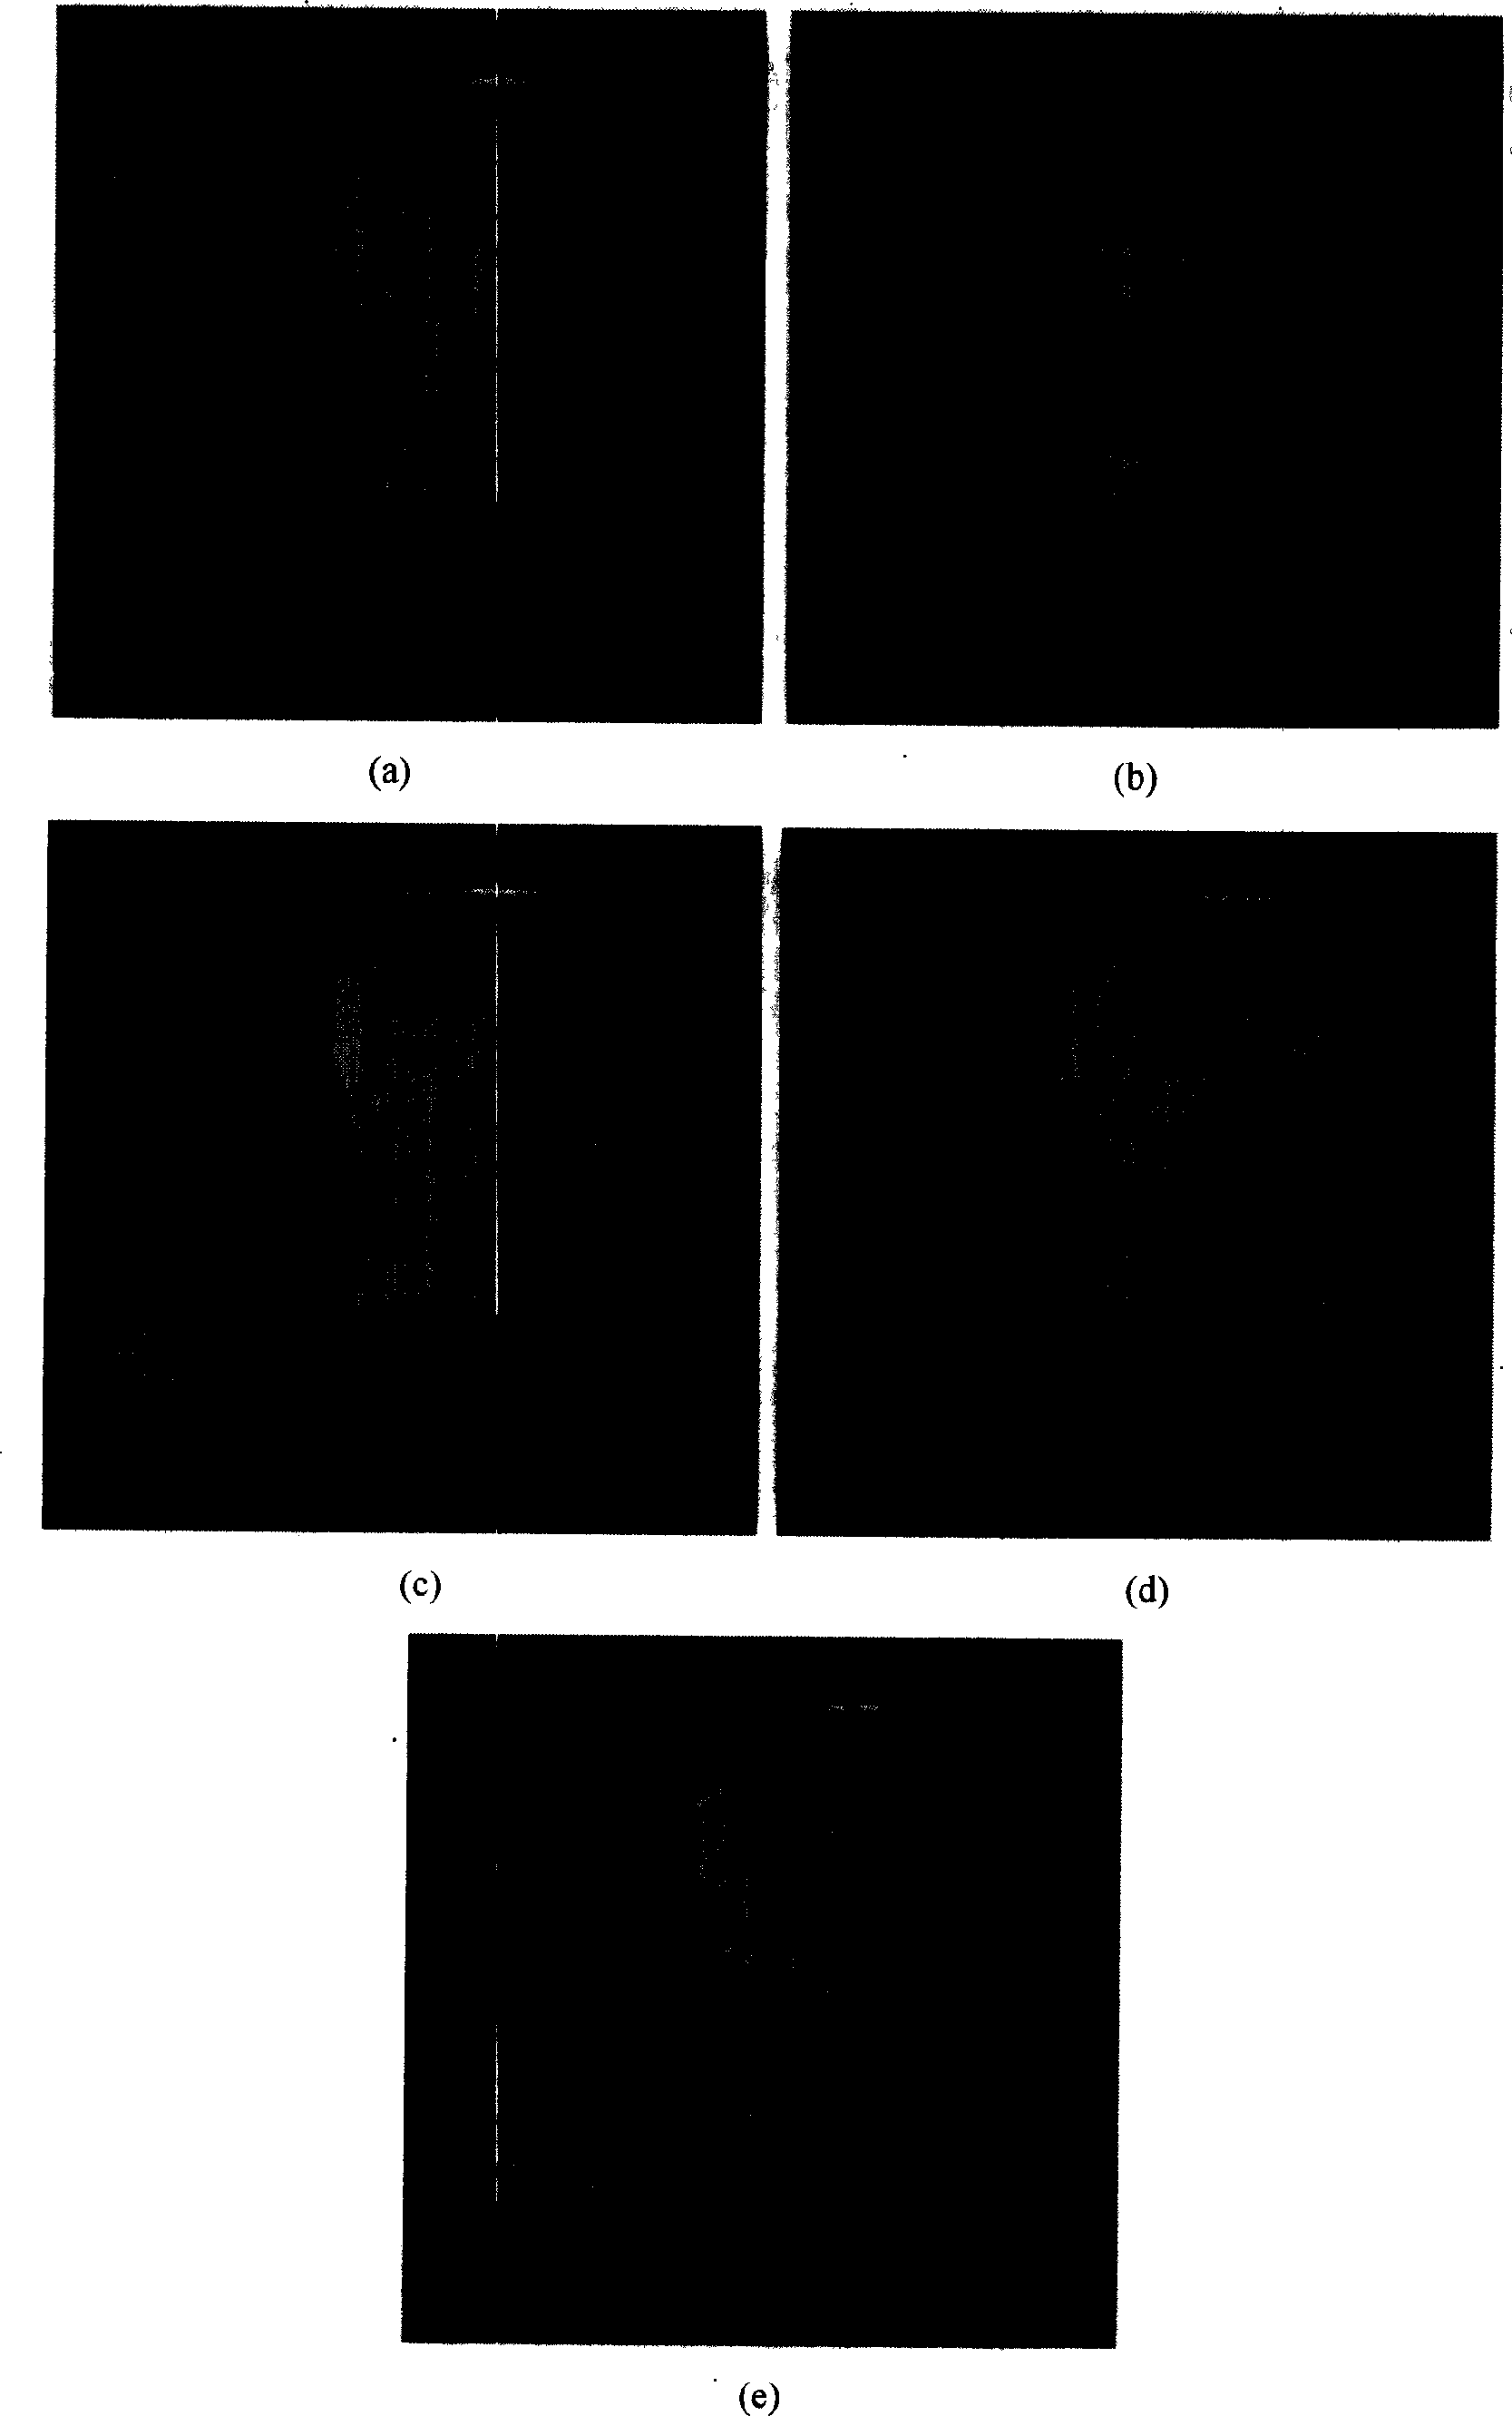 Image fusing method based on cosine modulating filter unit